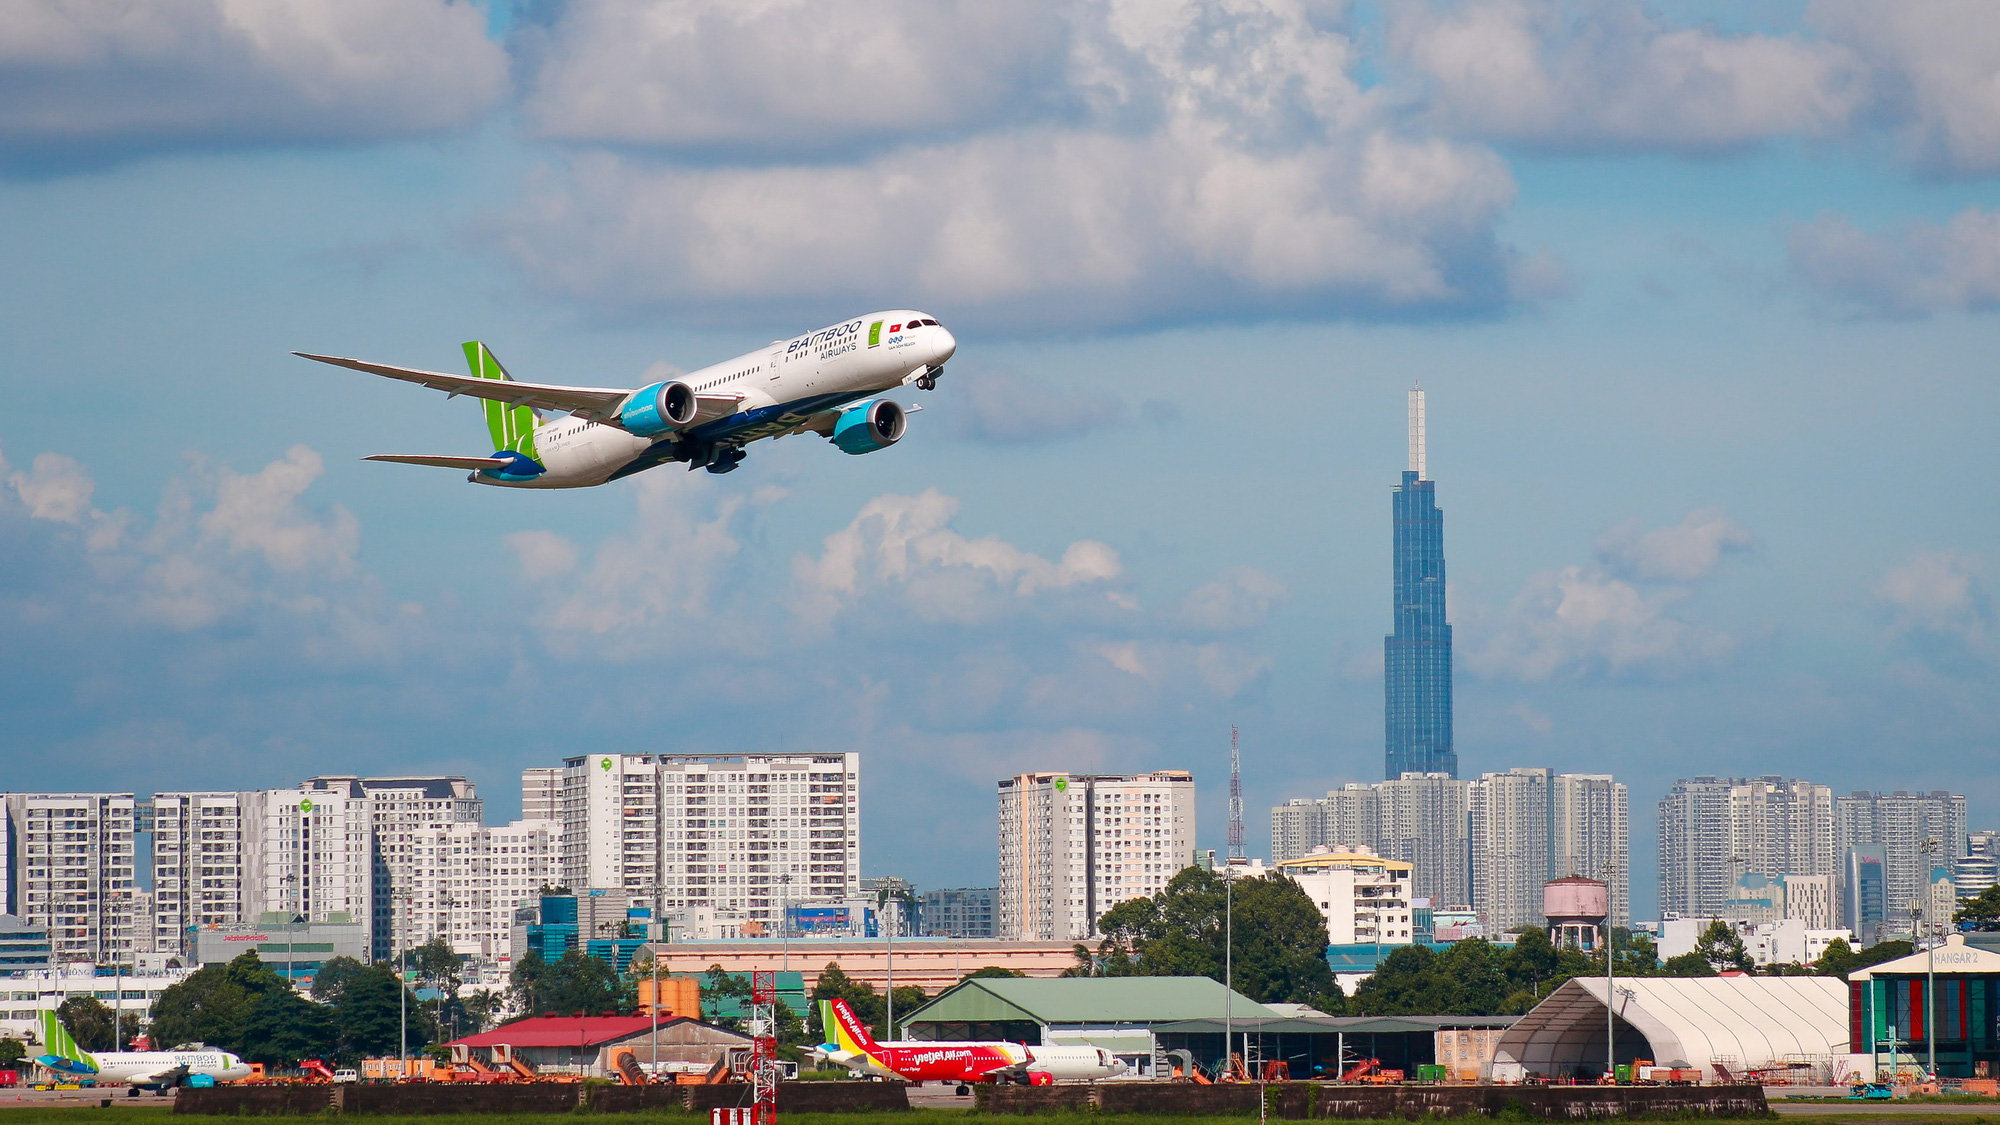 Bamboo Airways lãi trước thuế 400 tỷ đồng, thuộc số ít hãng bay trên thế giới có lợi nhuận năm 2020 - Ảnh 2.